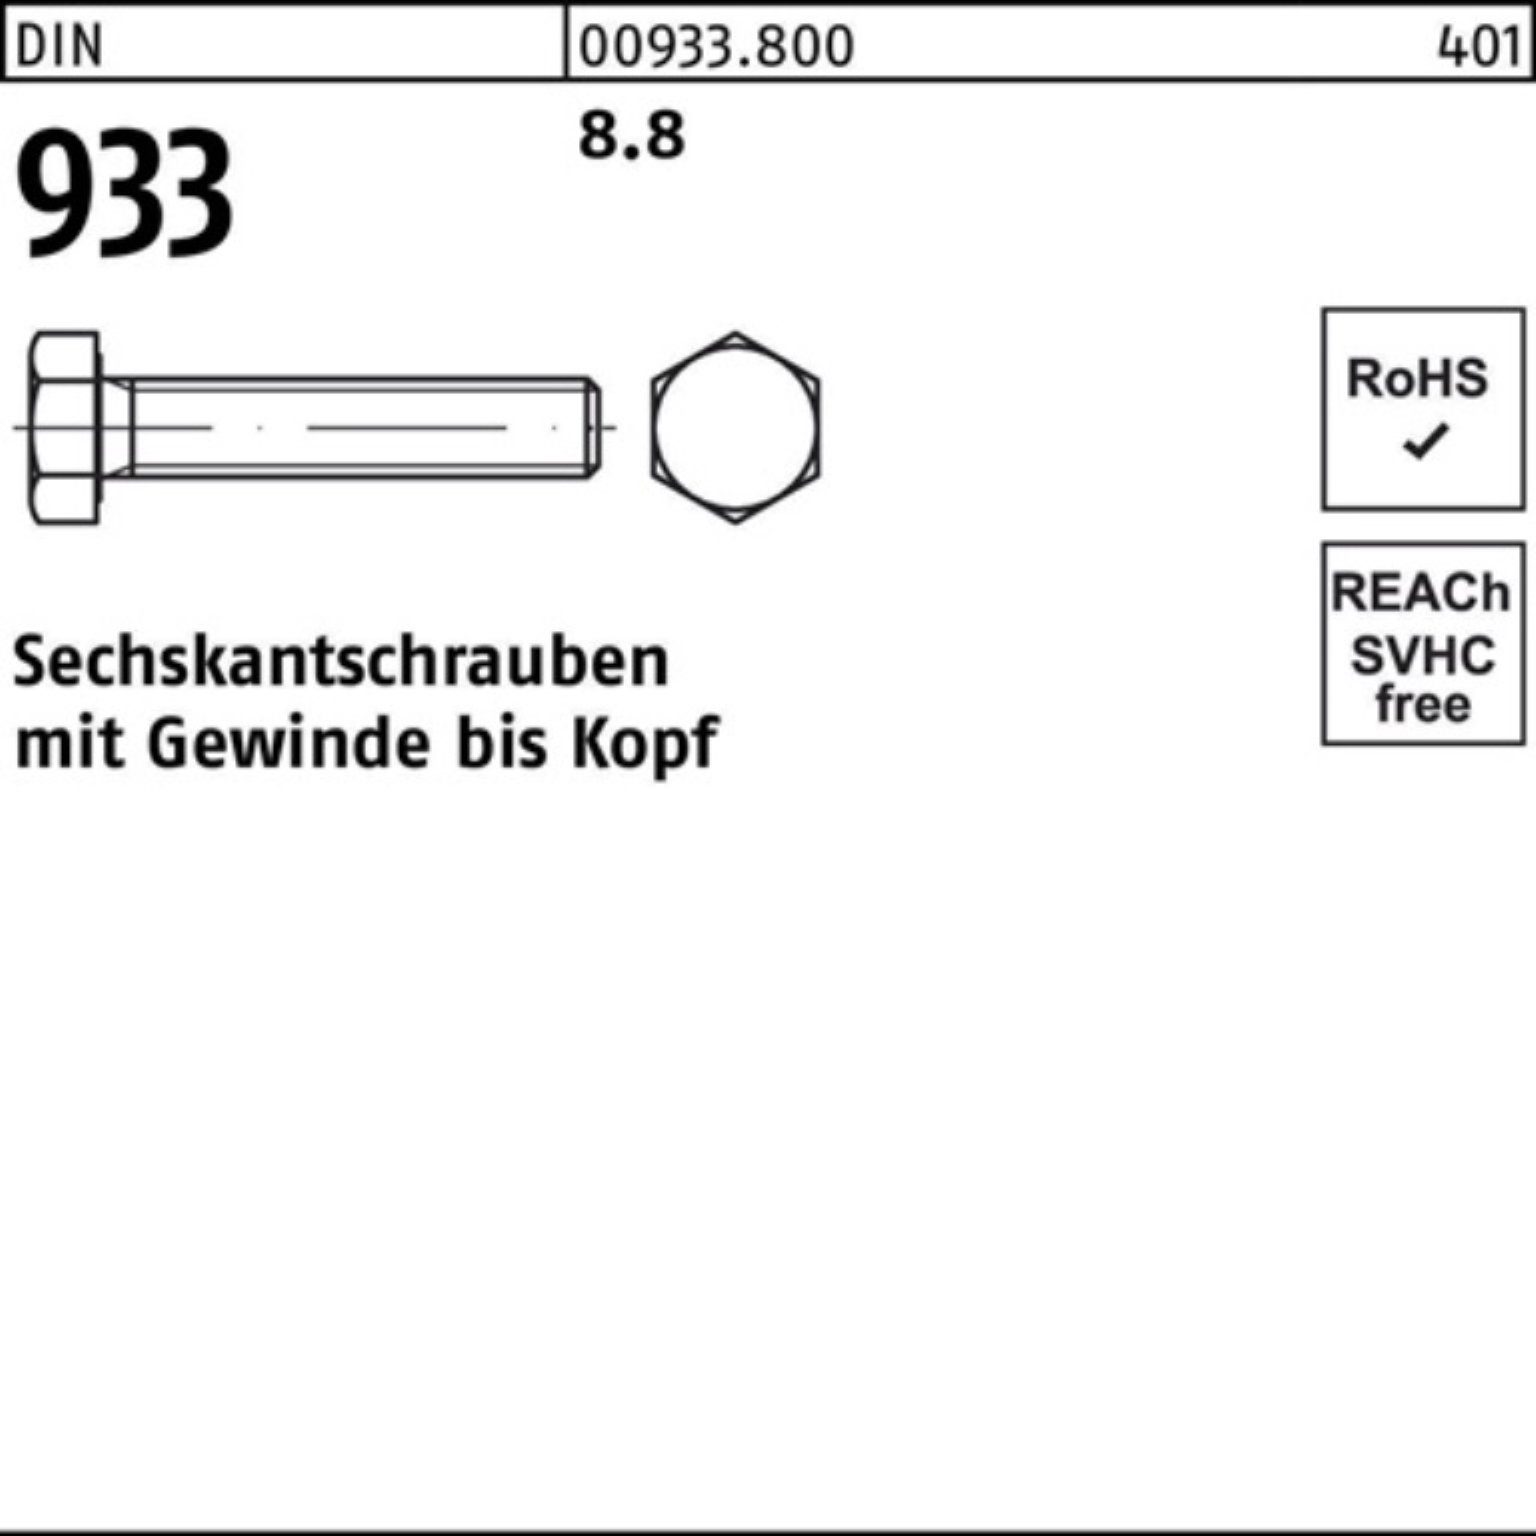 Reyher Sechskantschraube 500er DIN M6x VG 933 8 500 Sechskantschraube 933 8 DIN 8.8 Pack Stück